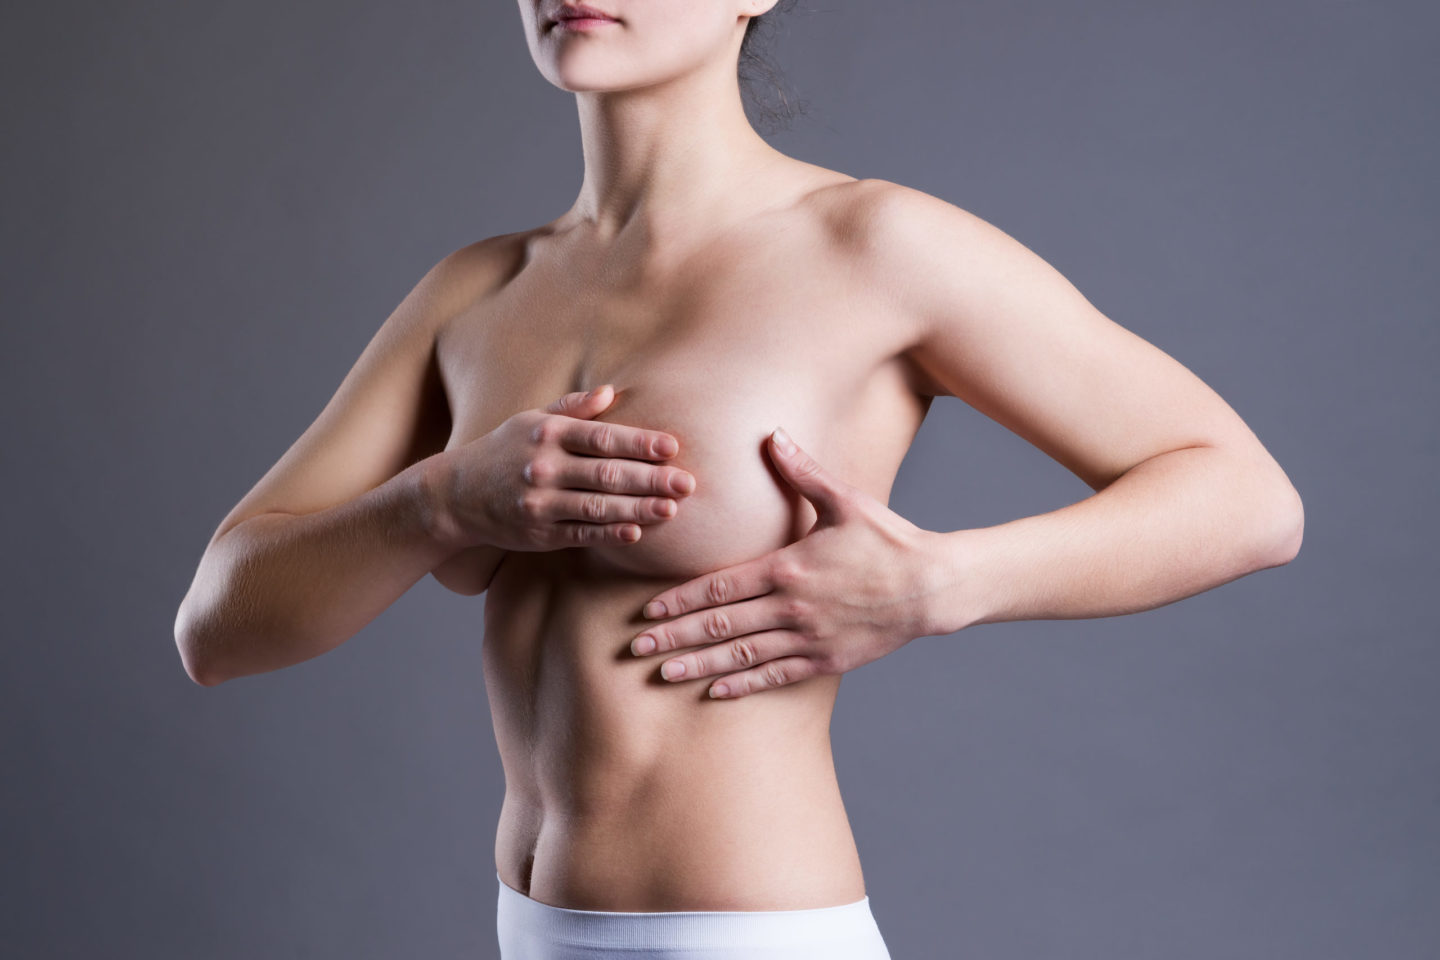 جراحة ترميم الثدي: ما الخيارات المتاحة وأيها أفضل؟